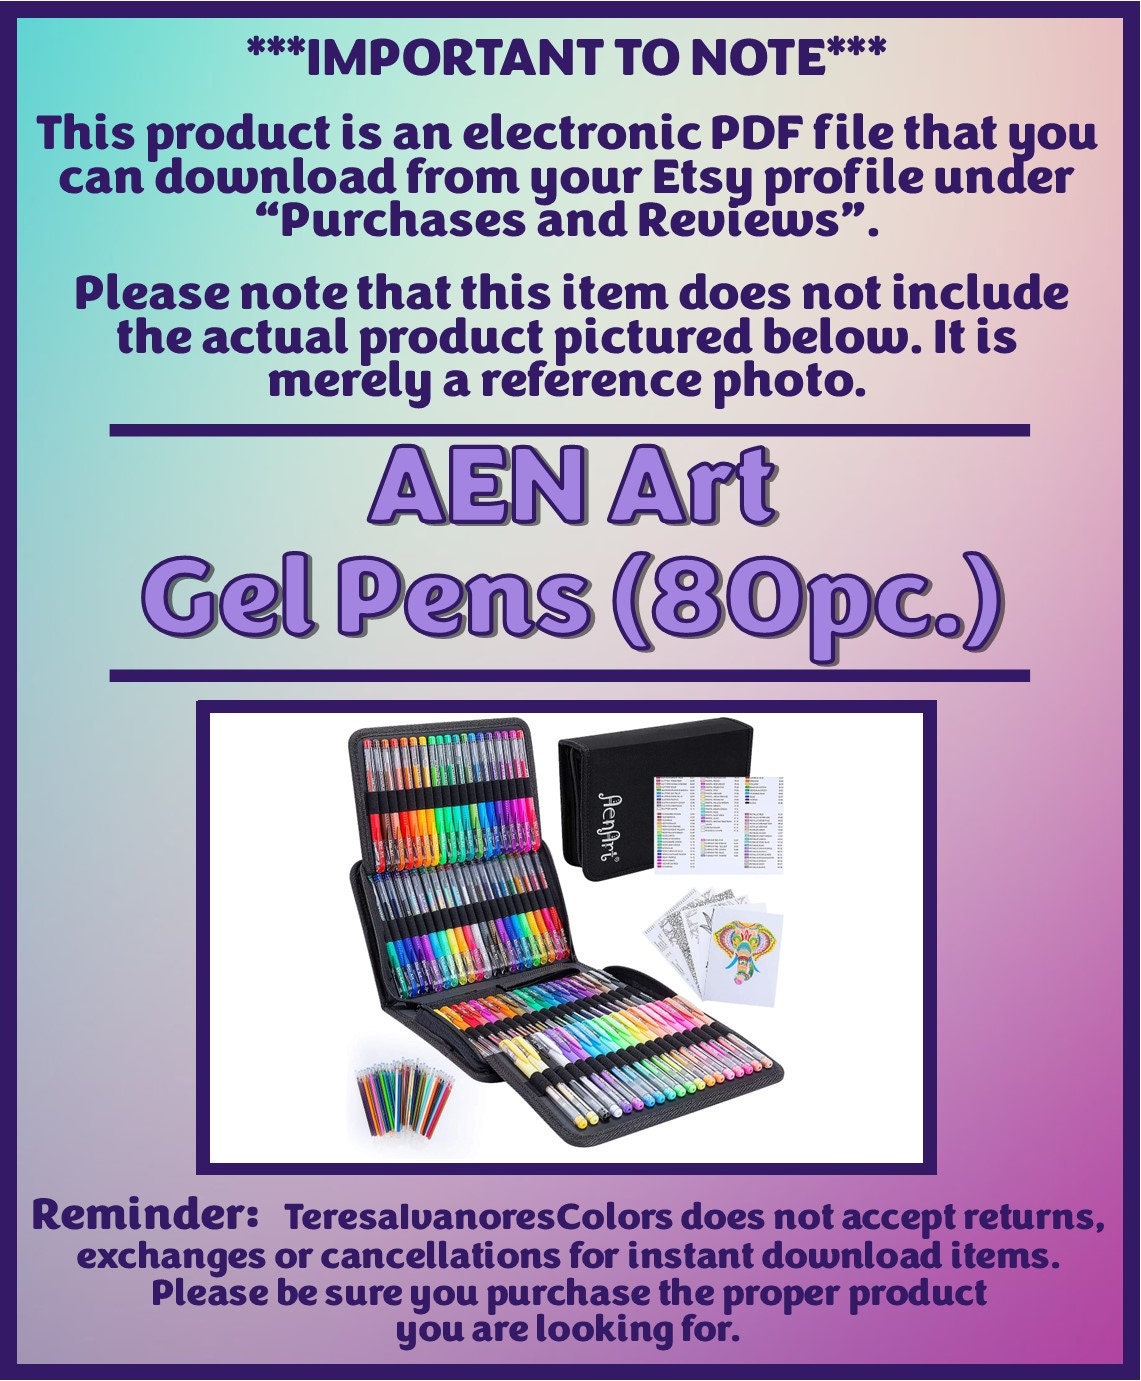 Swatch Form: AEN Art Gel Pens 80pc. 